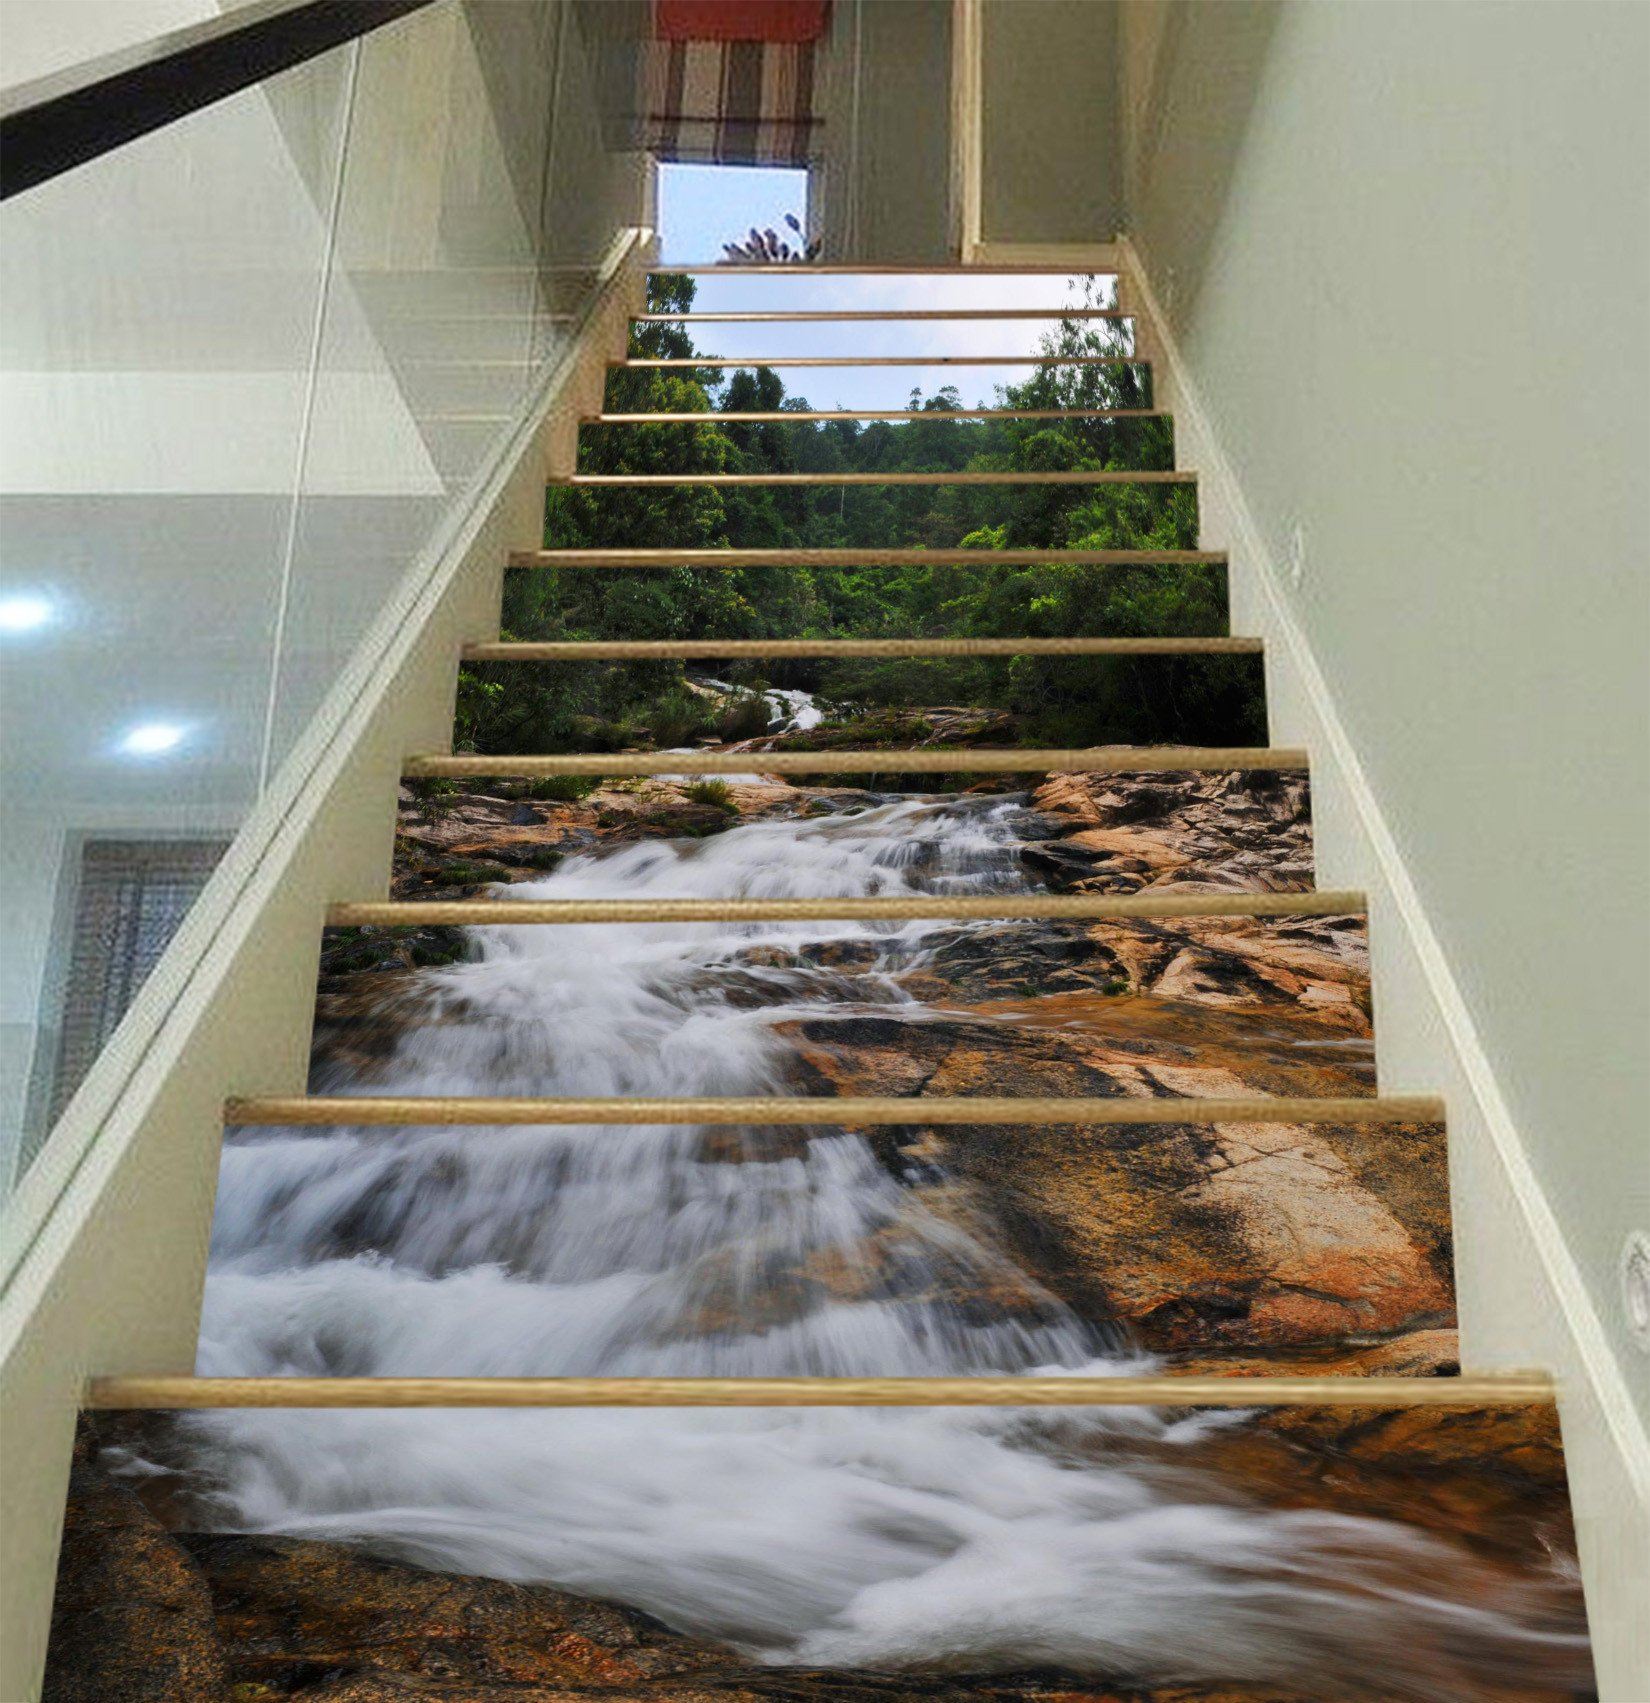 3D River Bed Rocks 764 Stair Risers Wallpaper AJ Wallpaper 